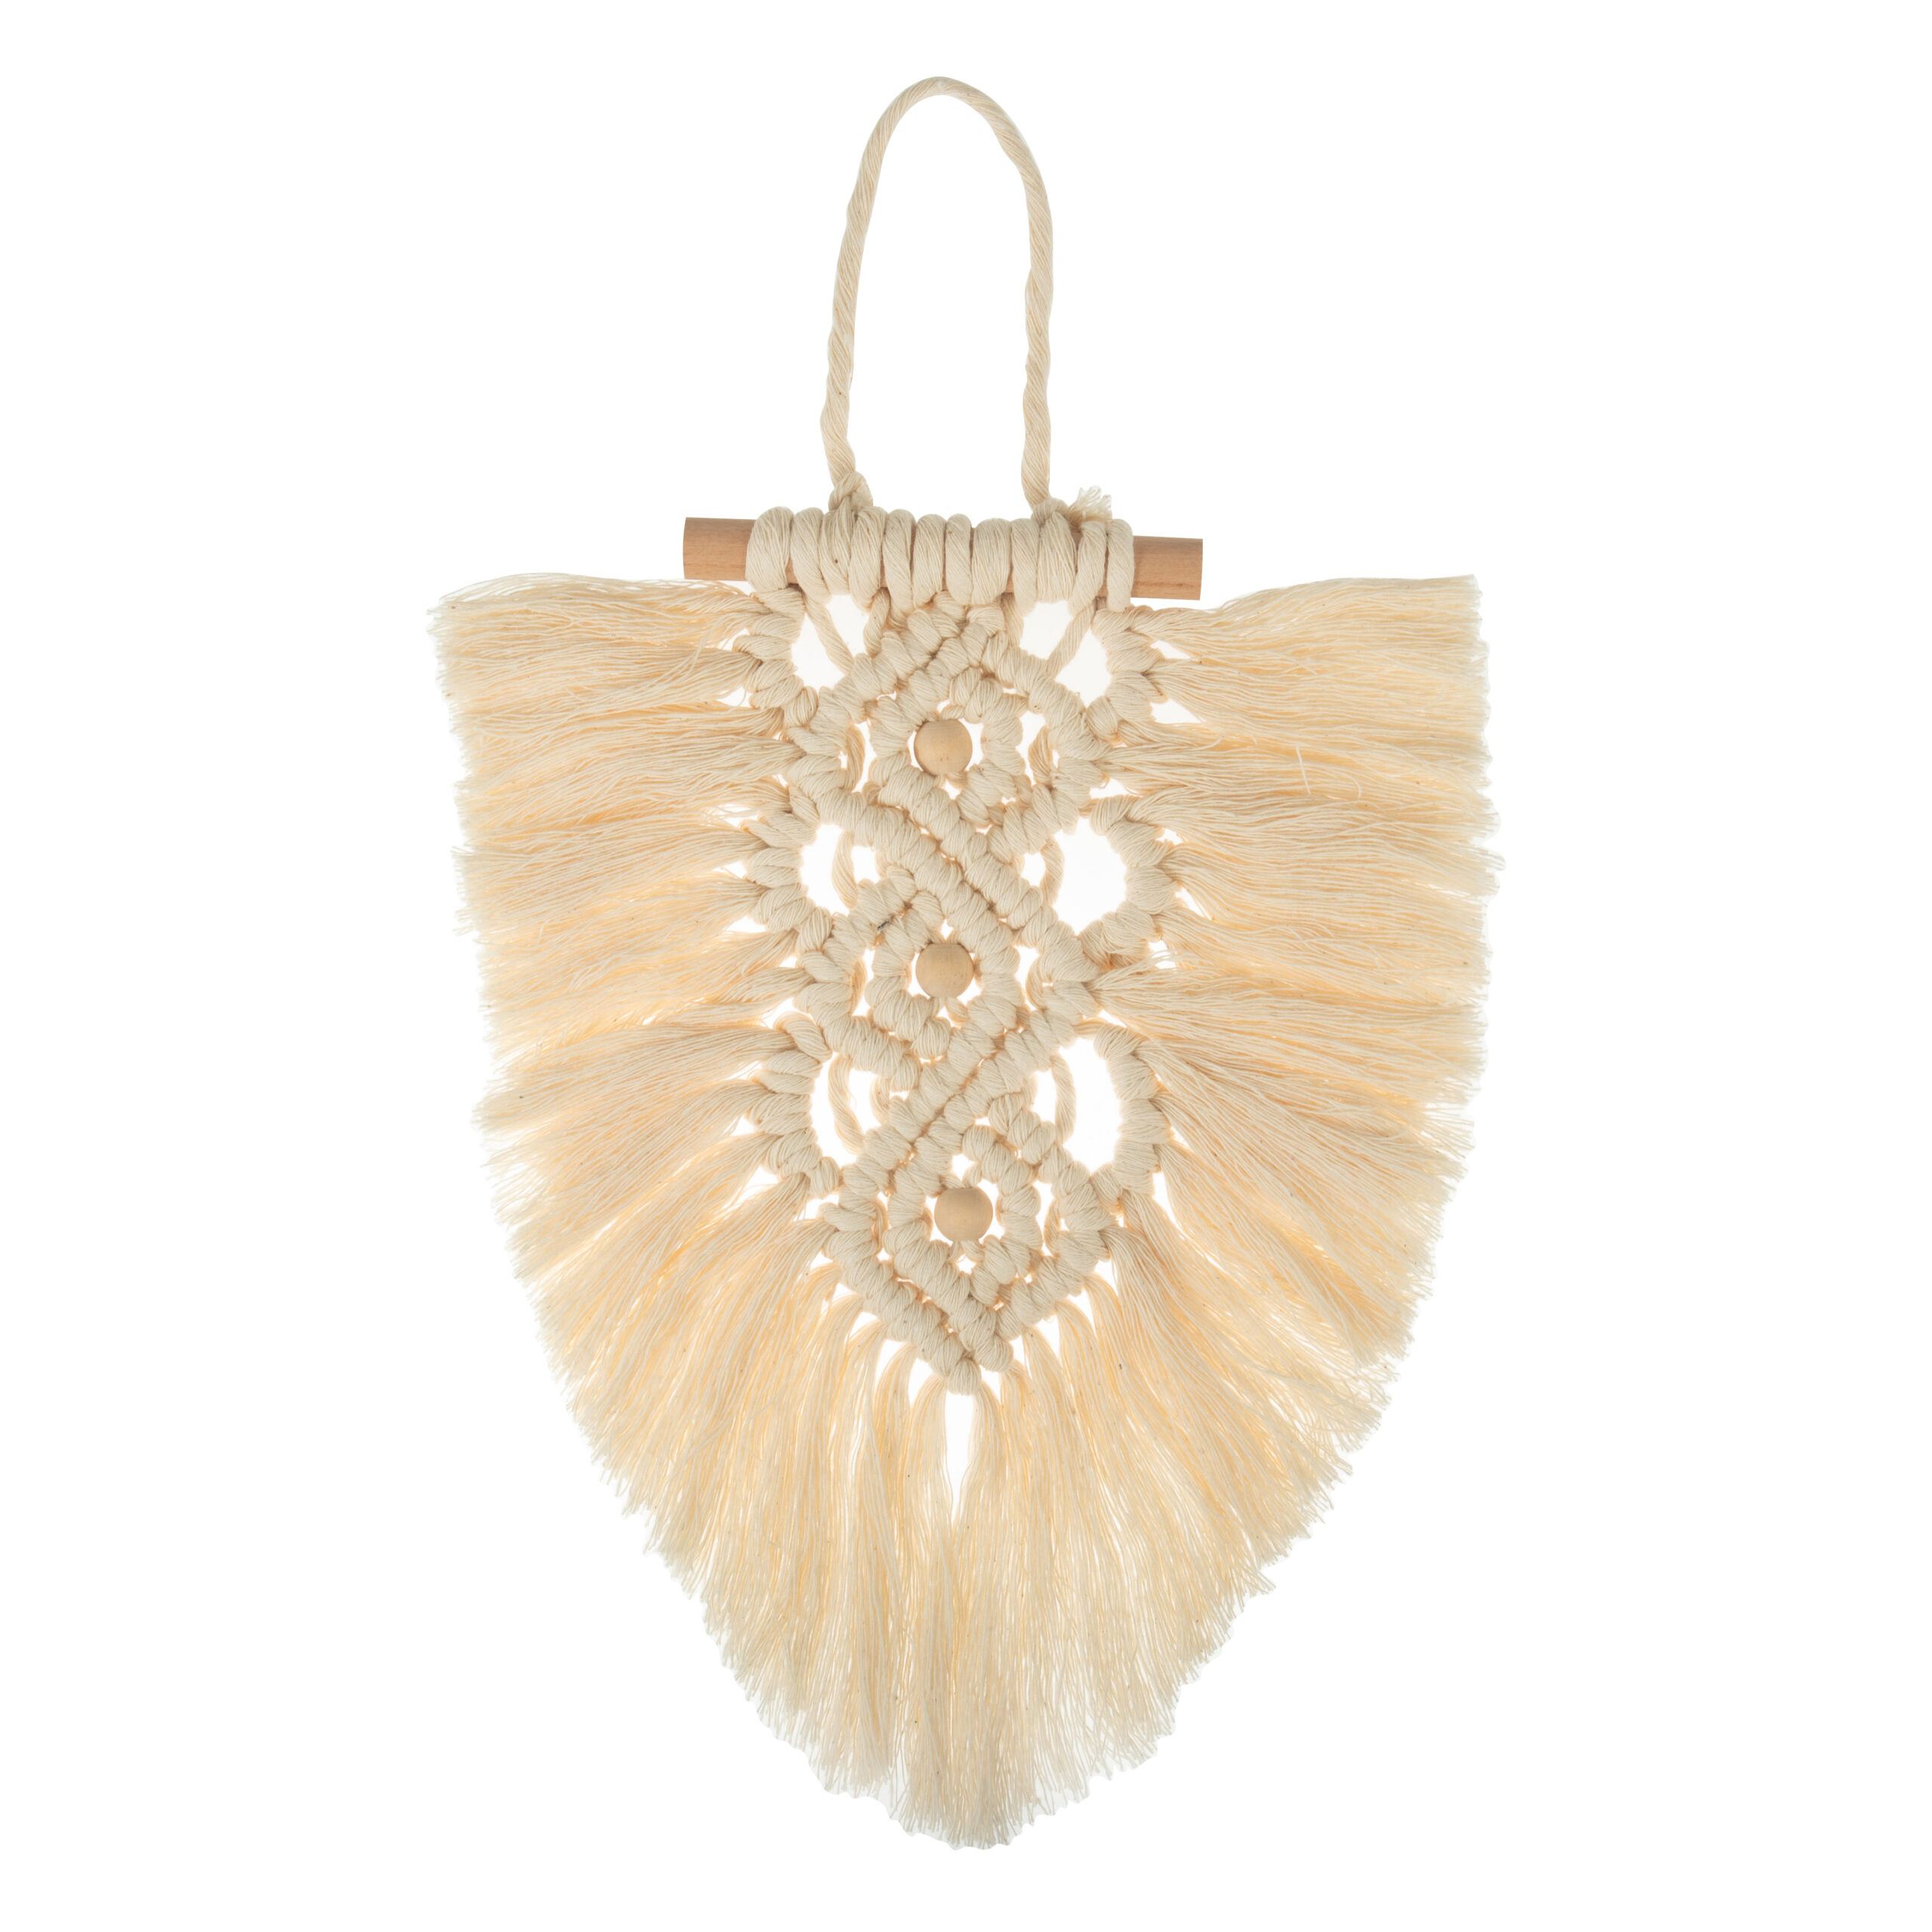 Macramé Kit - Wall Hanging: Feather